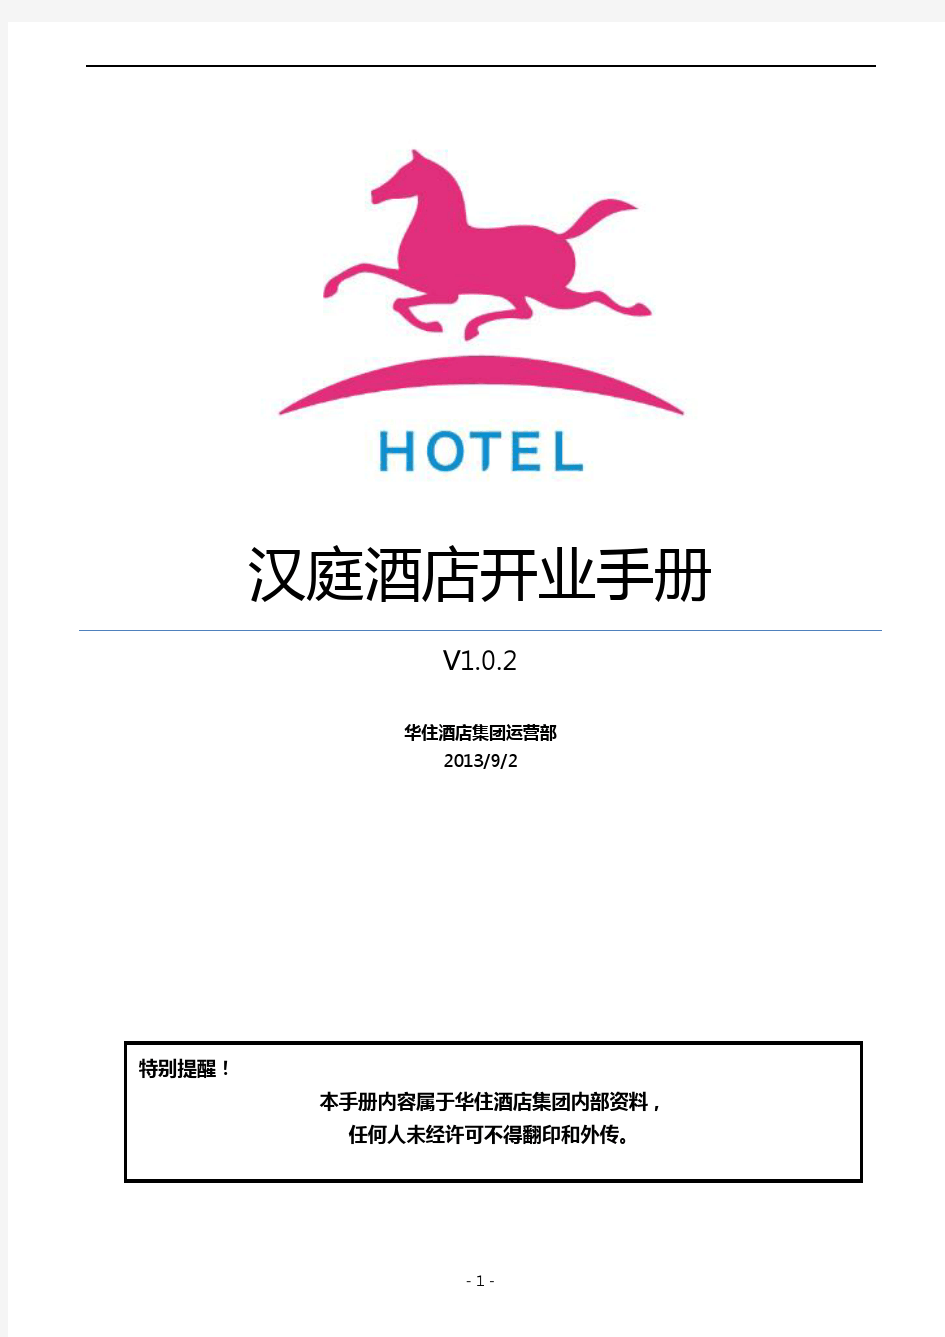 汉庭酒店开业手册V1.0.2